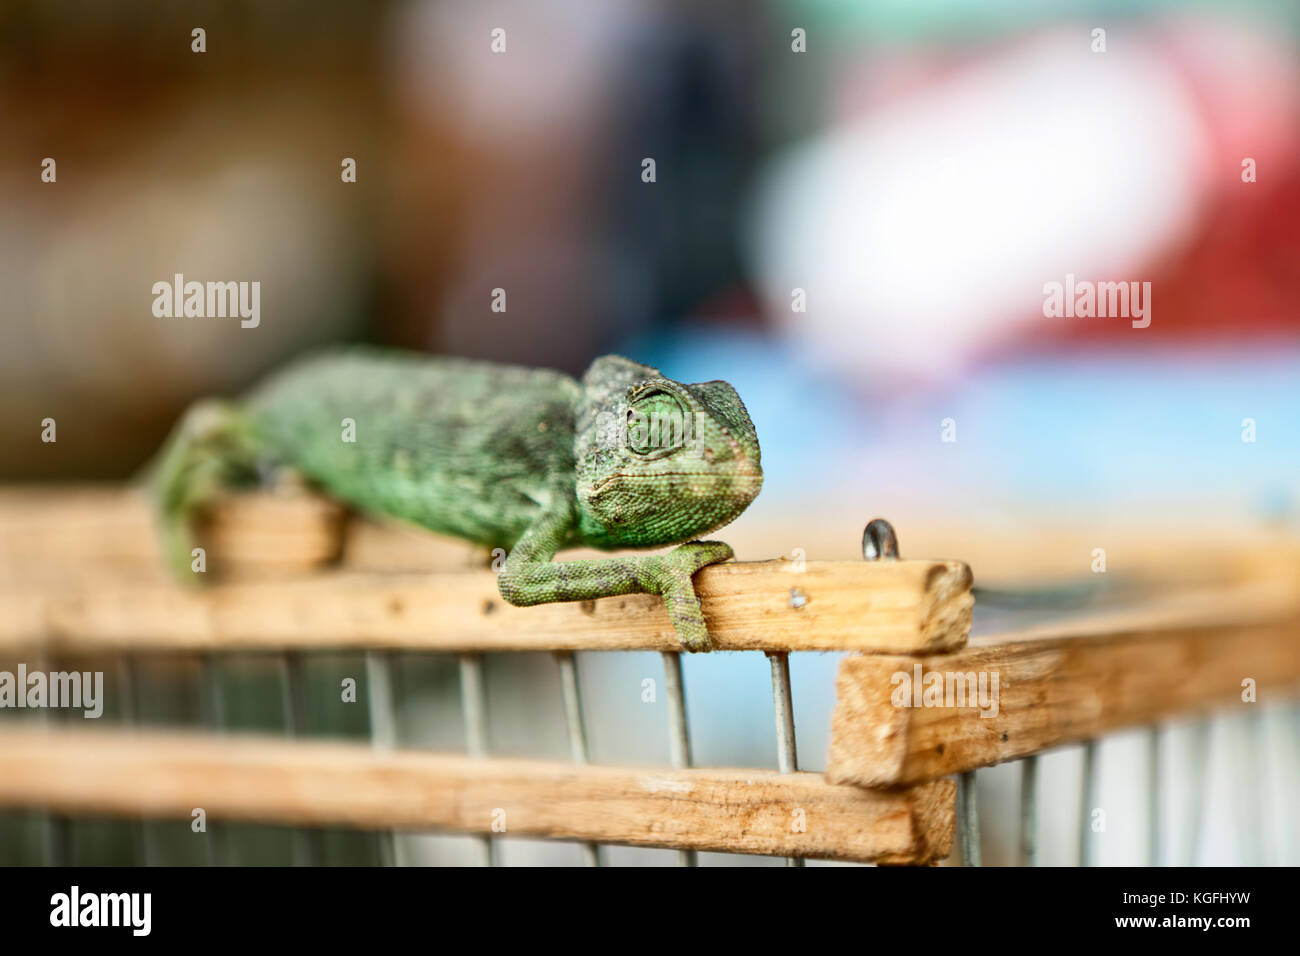 Yemen Chameleon standing on wooden fence Stock Photo